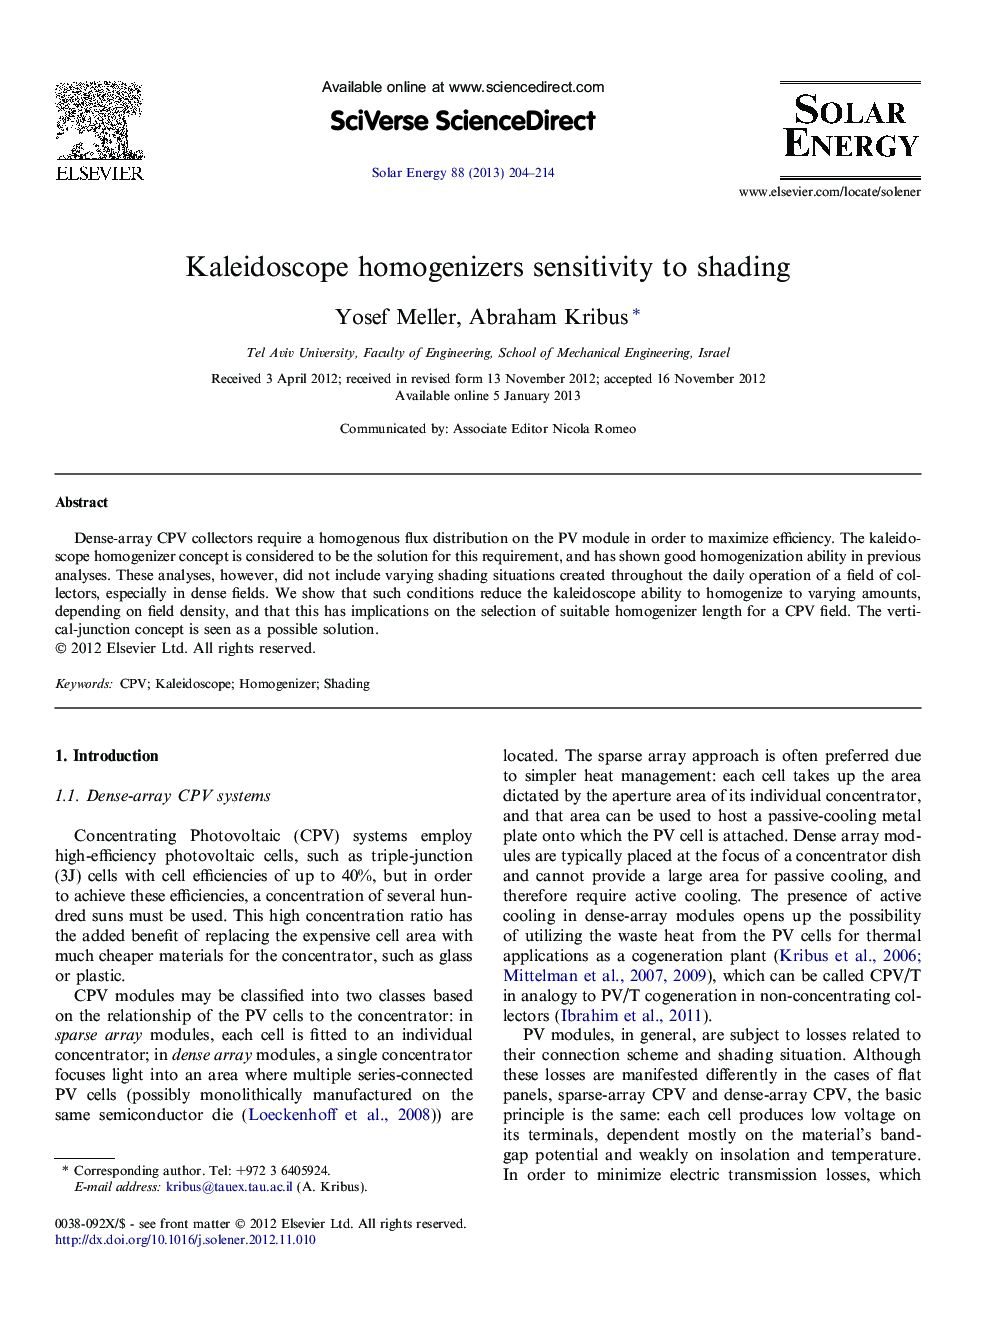 Kaleidoscope homogenizers sensitivity to shading